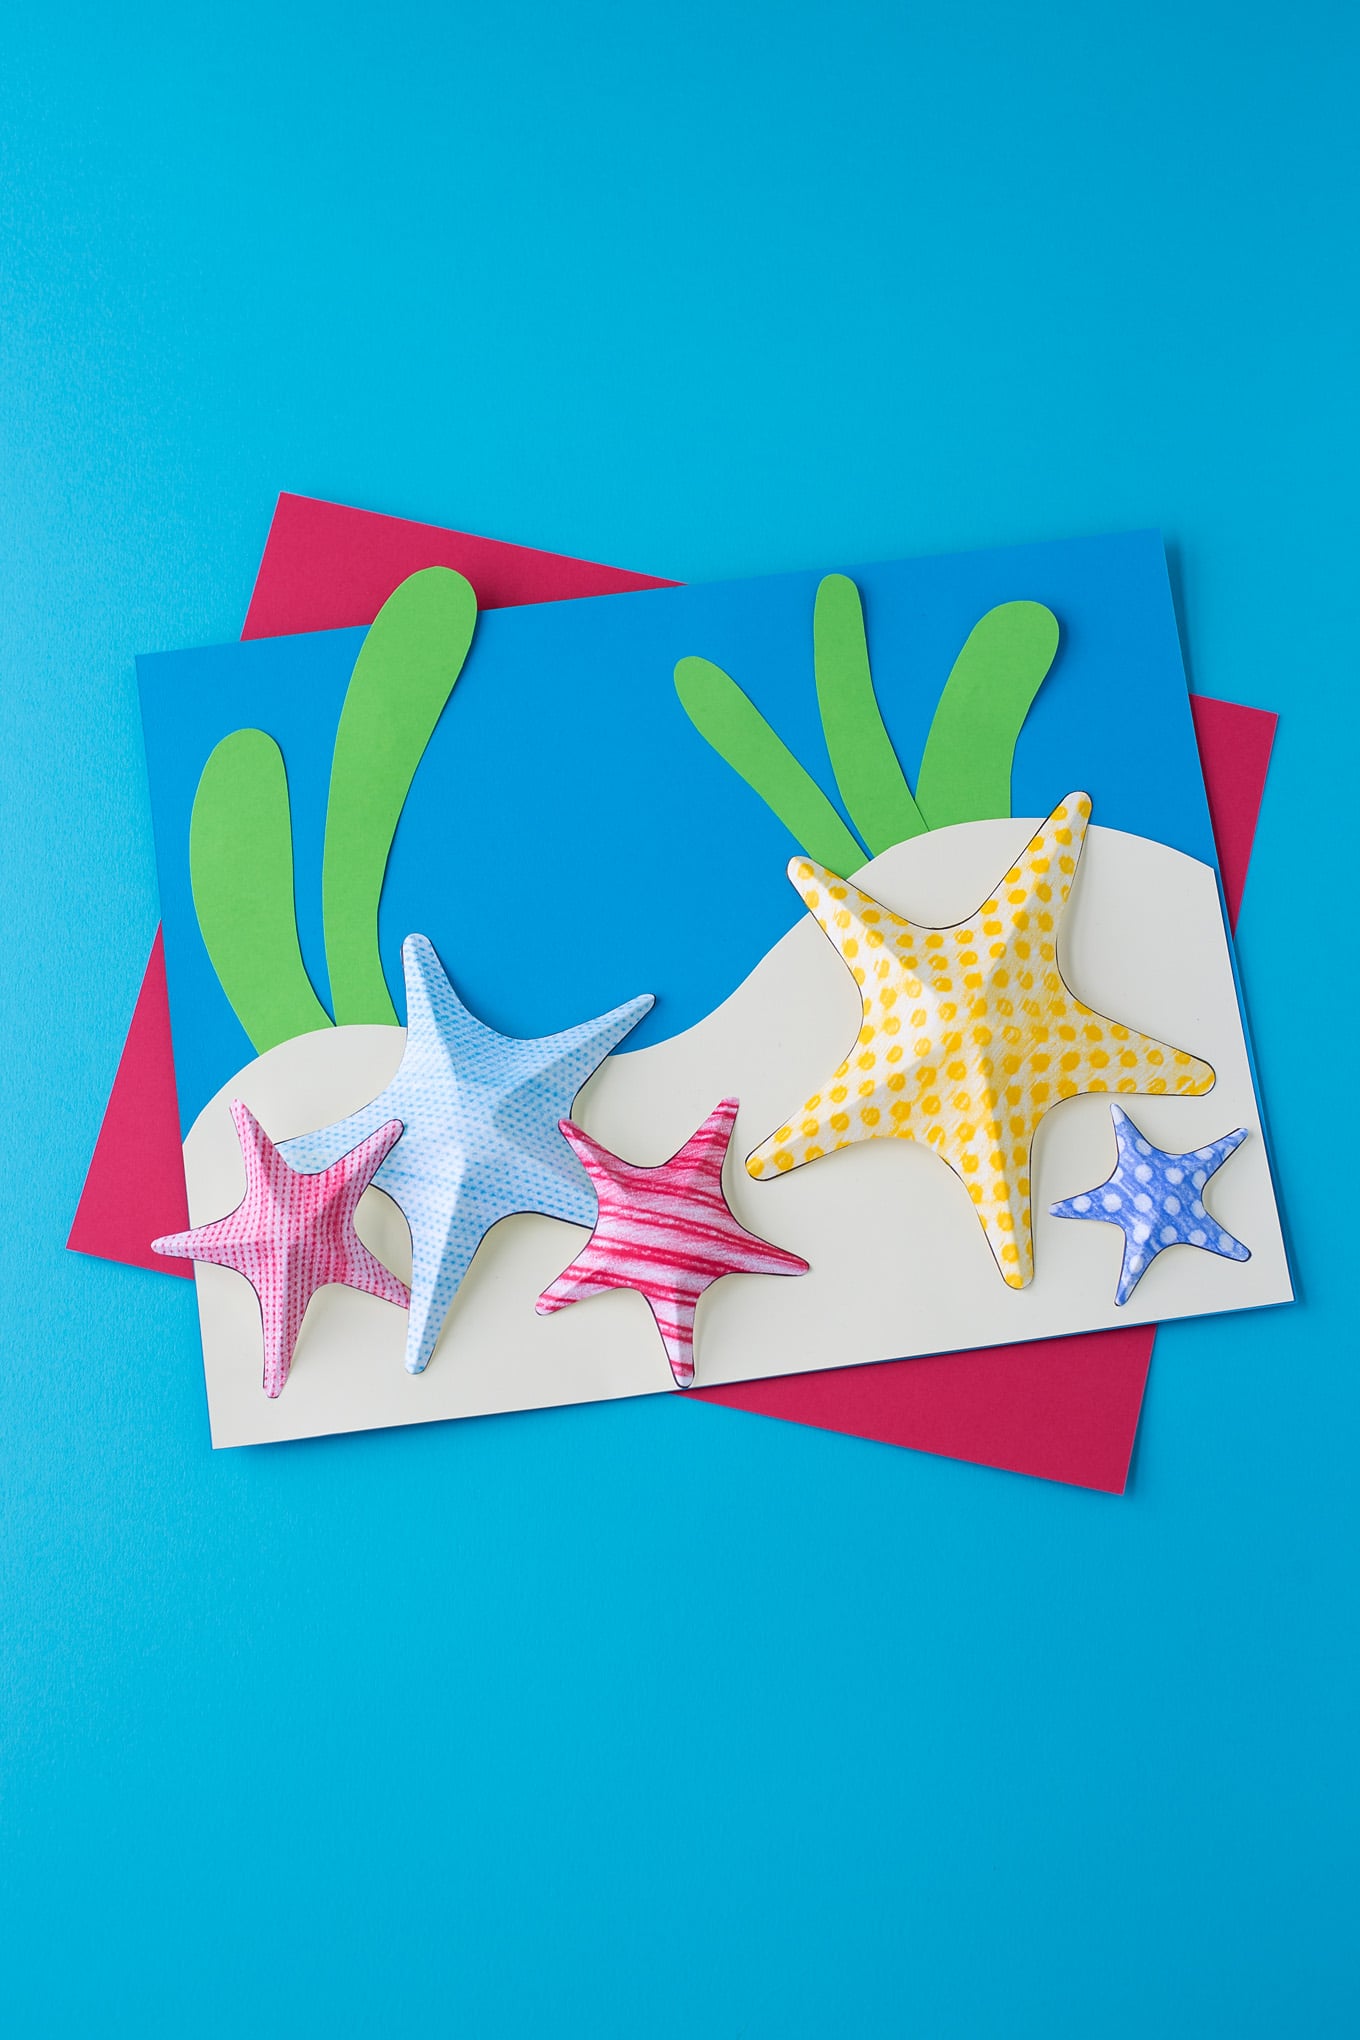 starfish paper plates